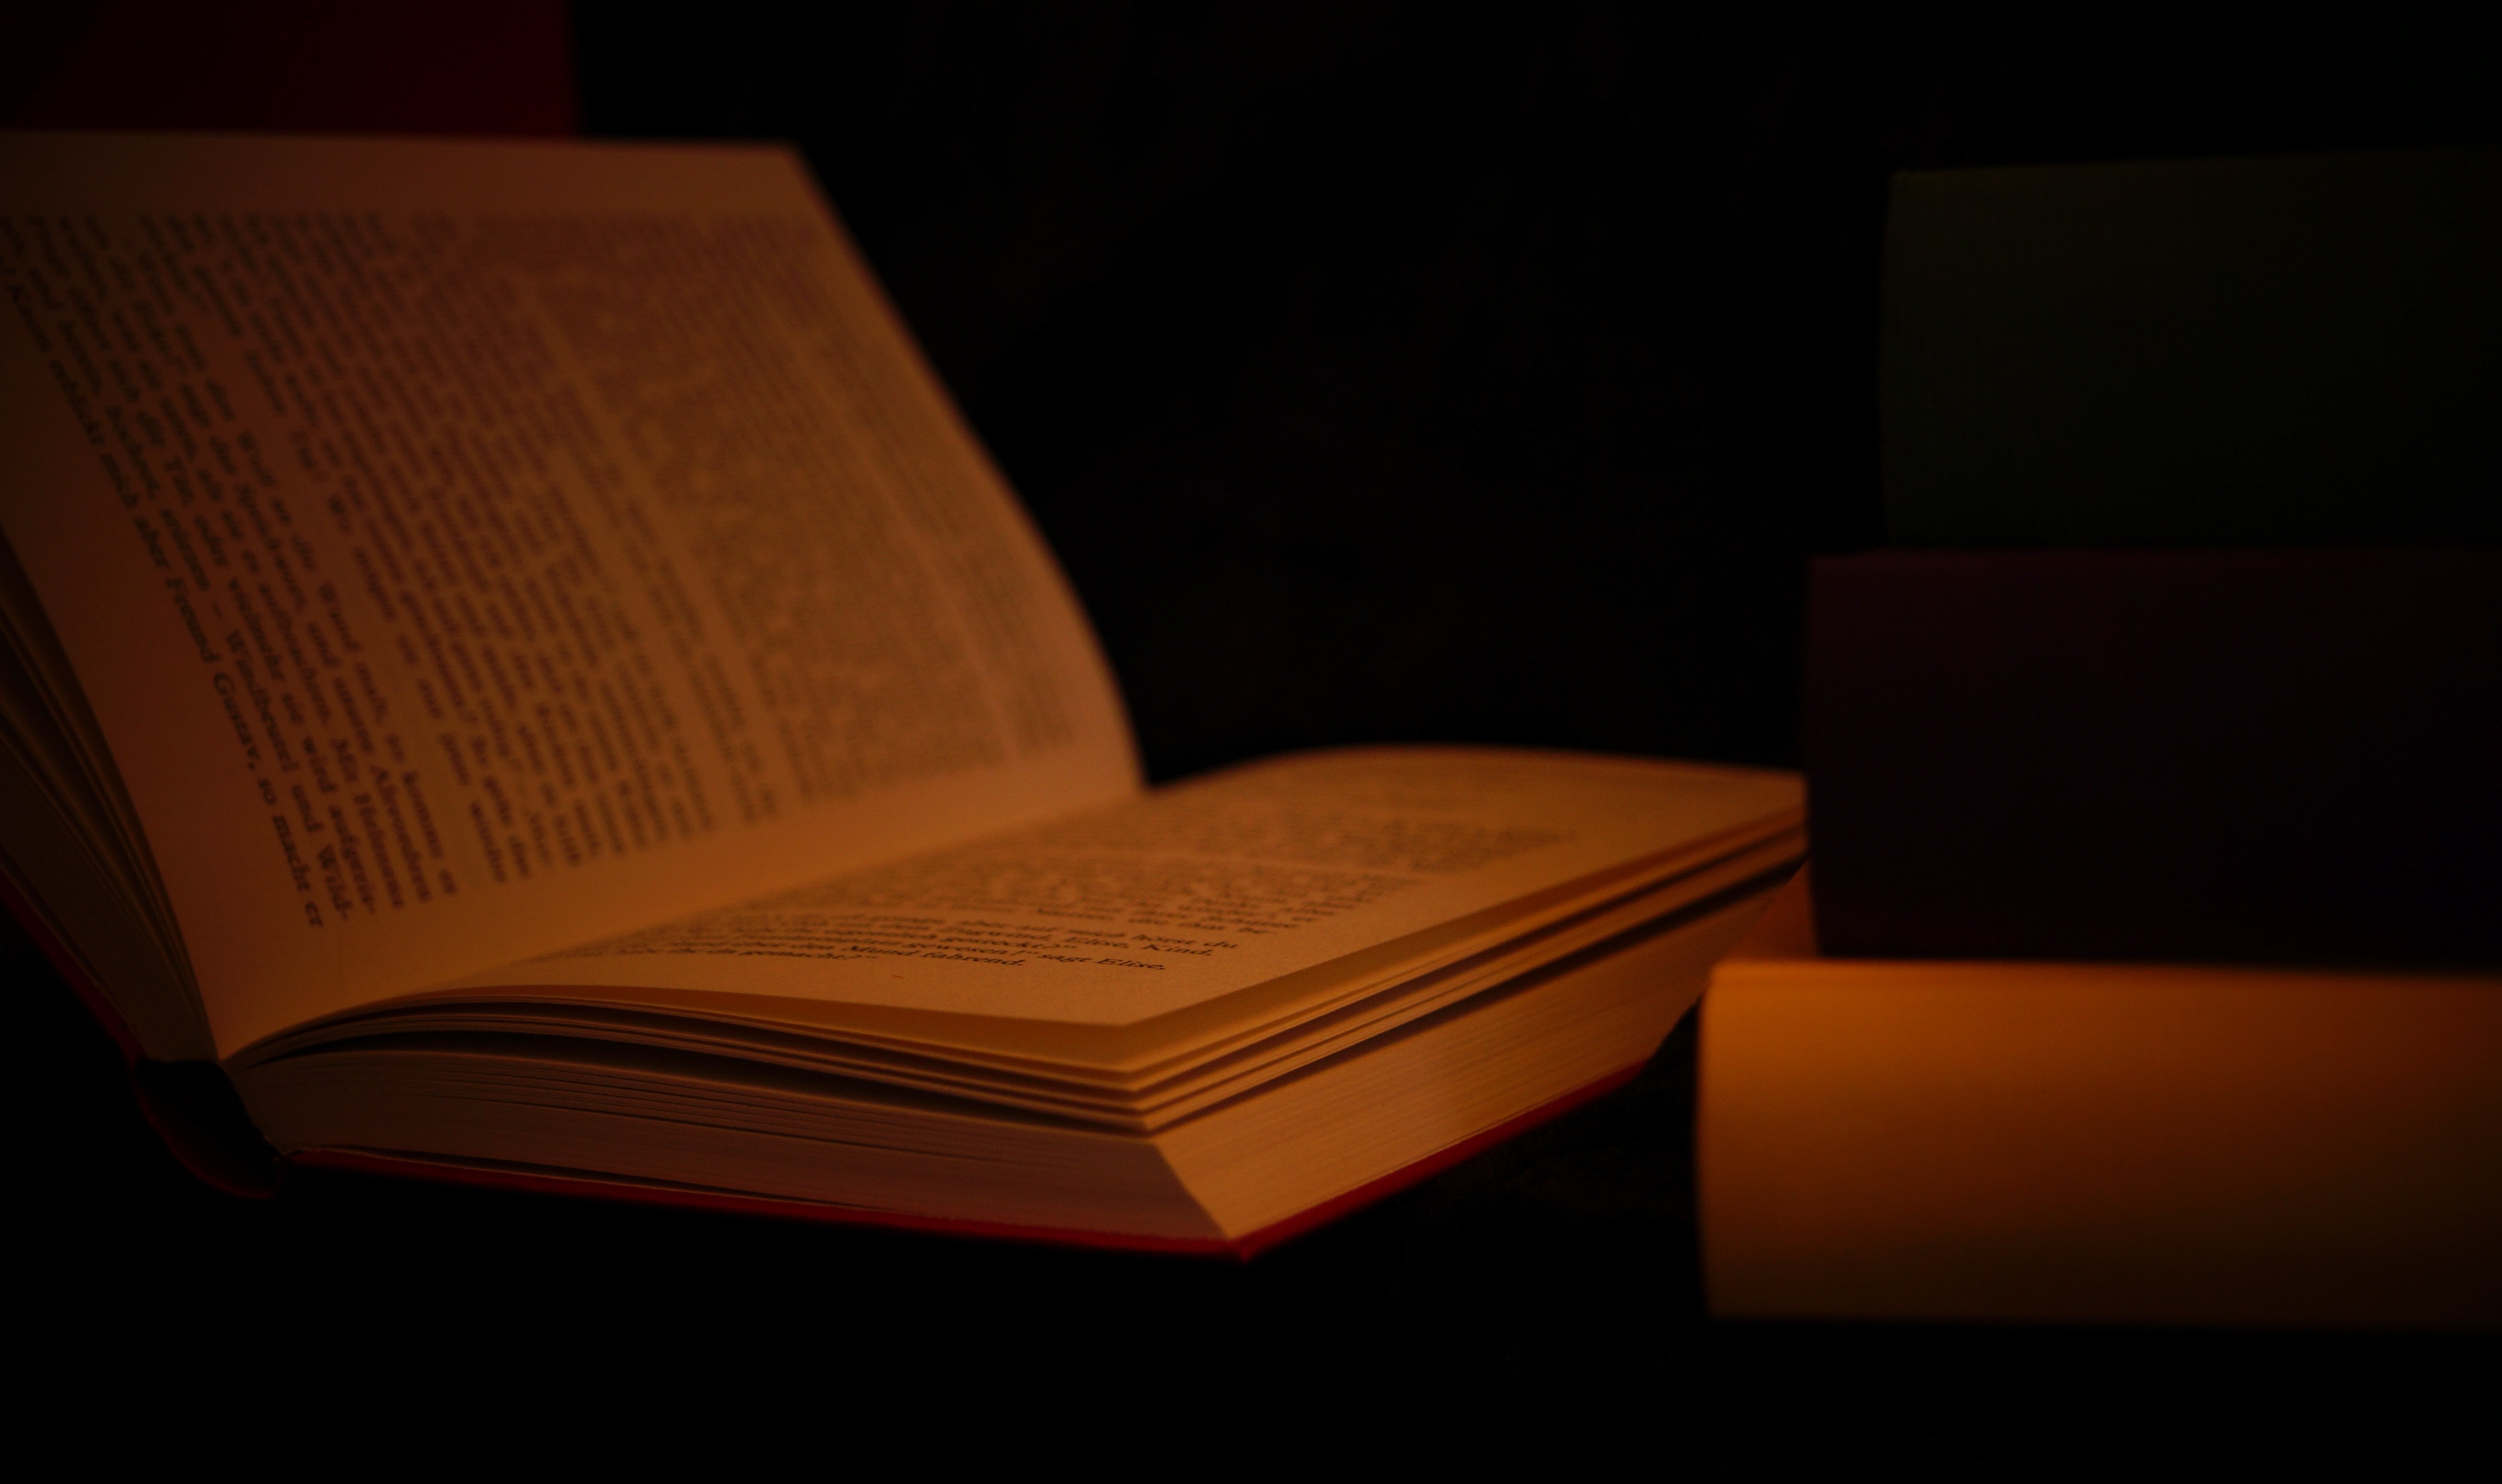 Книги полная темнота. Книги на темном фоне. Книга на черном фоне. Книжка на тёмном фоне. Красивый фон с книгами.